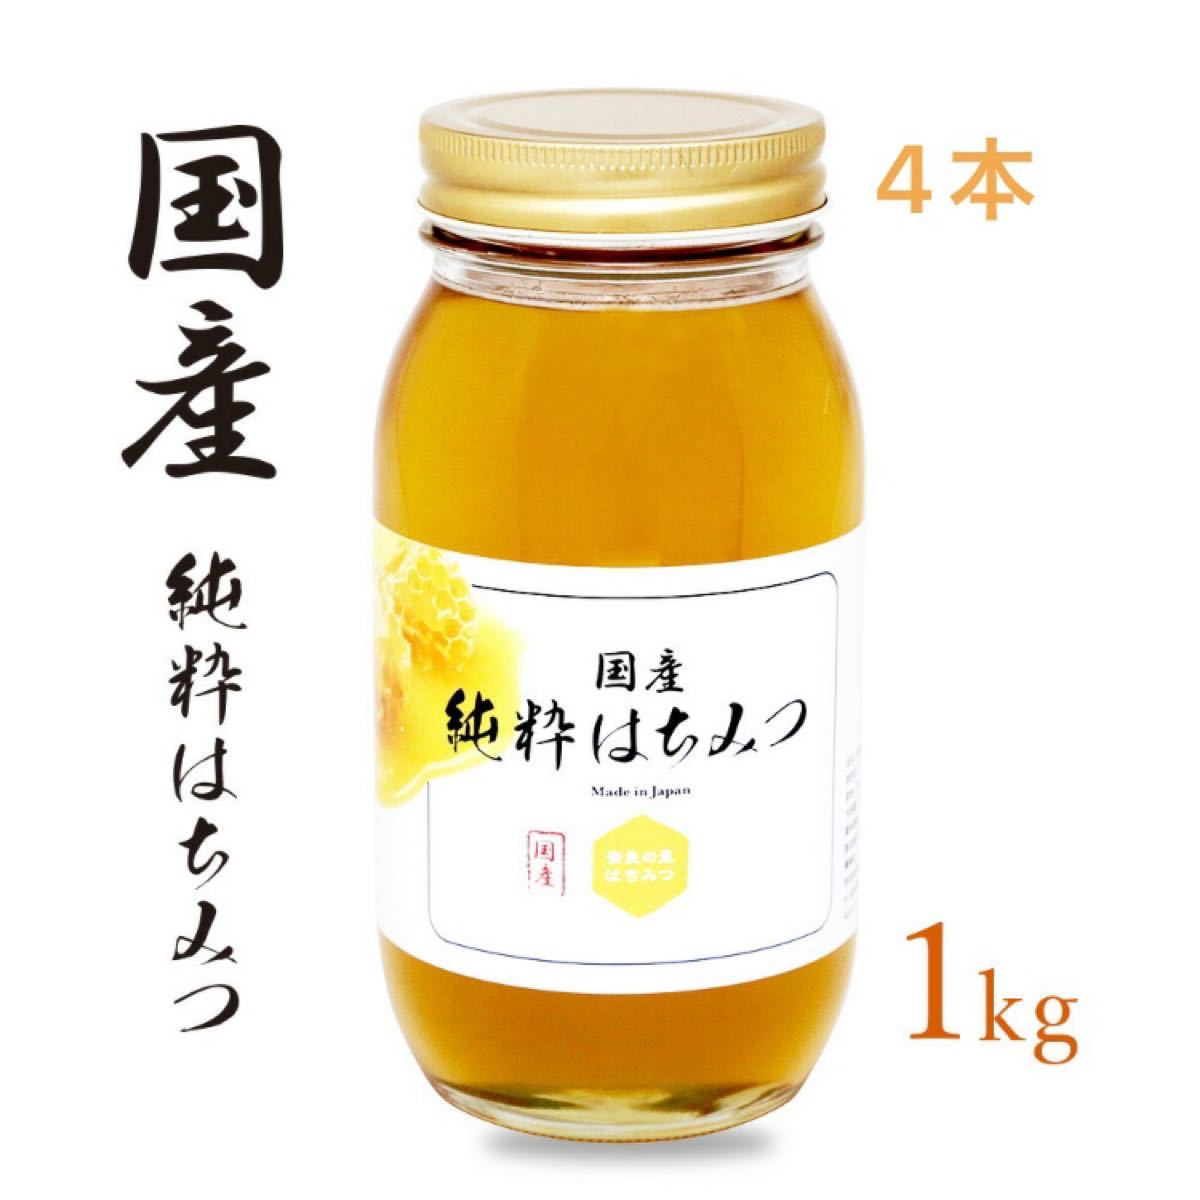 内祝い rinrin様専用国産純粋れんげ蜂蜜1キロ8本 国産純粋れんげ蜂蜜1キロ8本